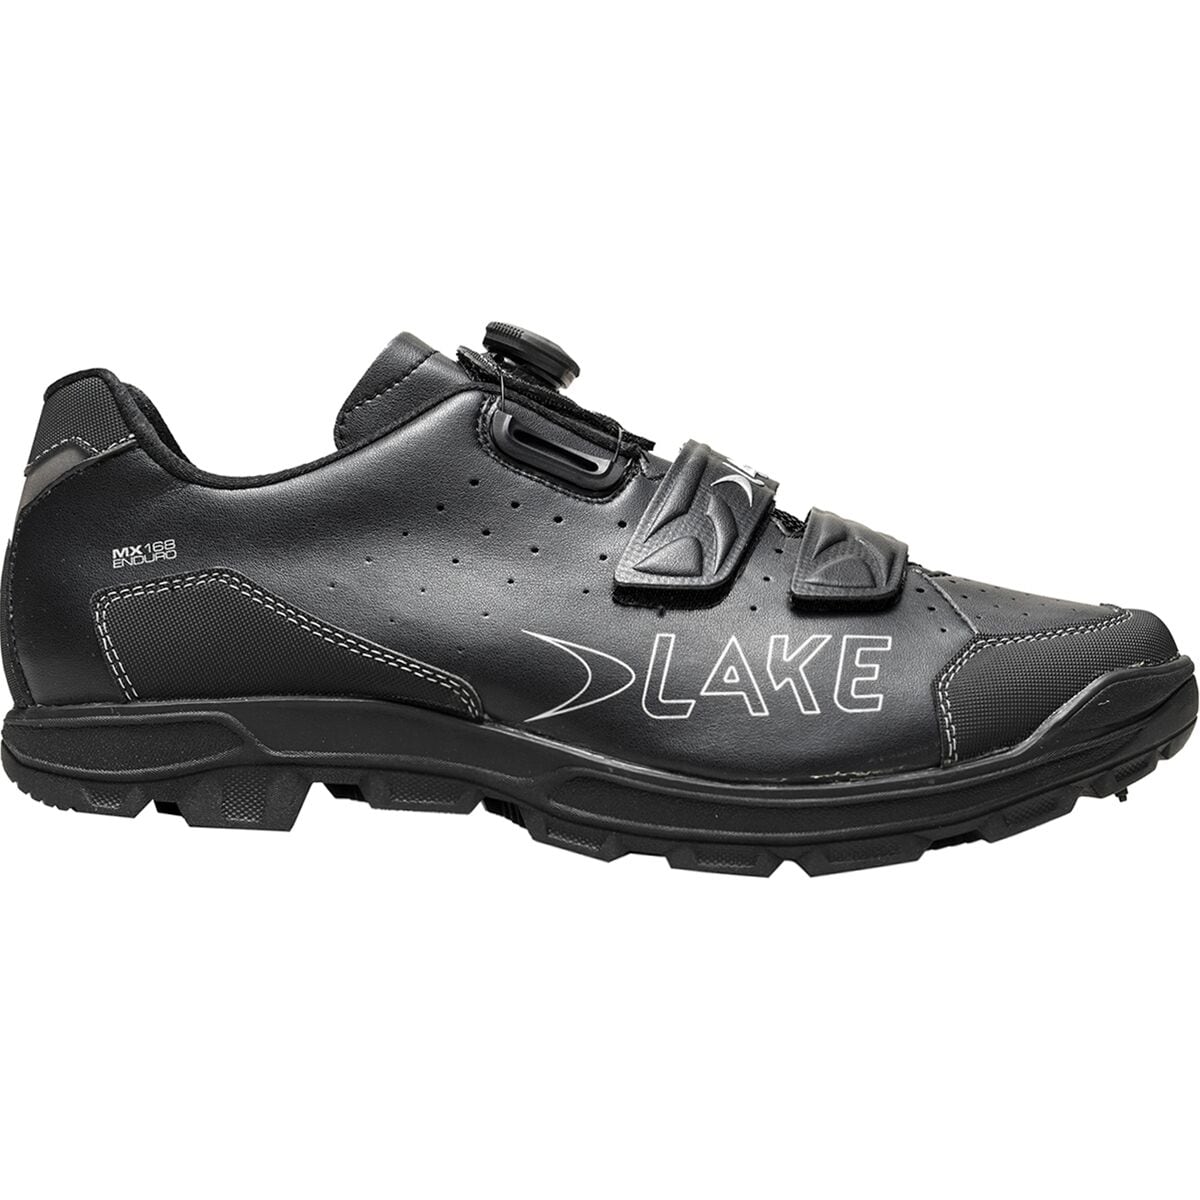 Lake MX168 Enduro Cycling Shoe - Men's